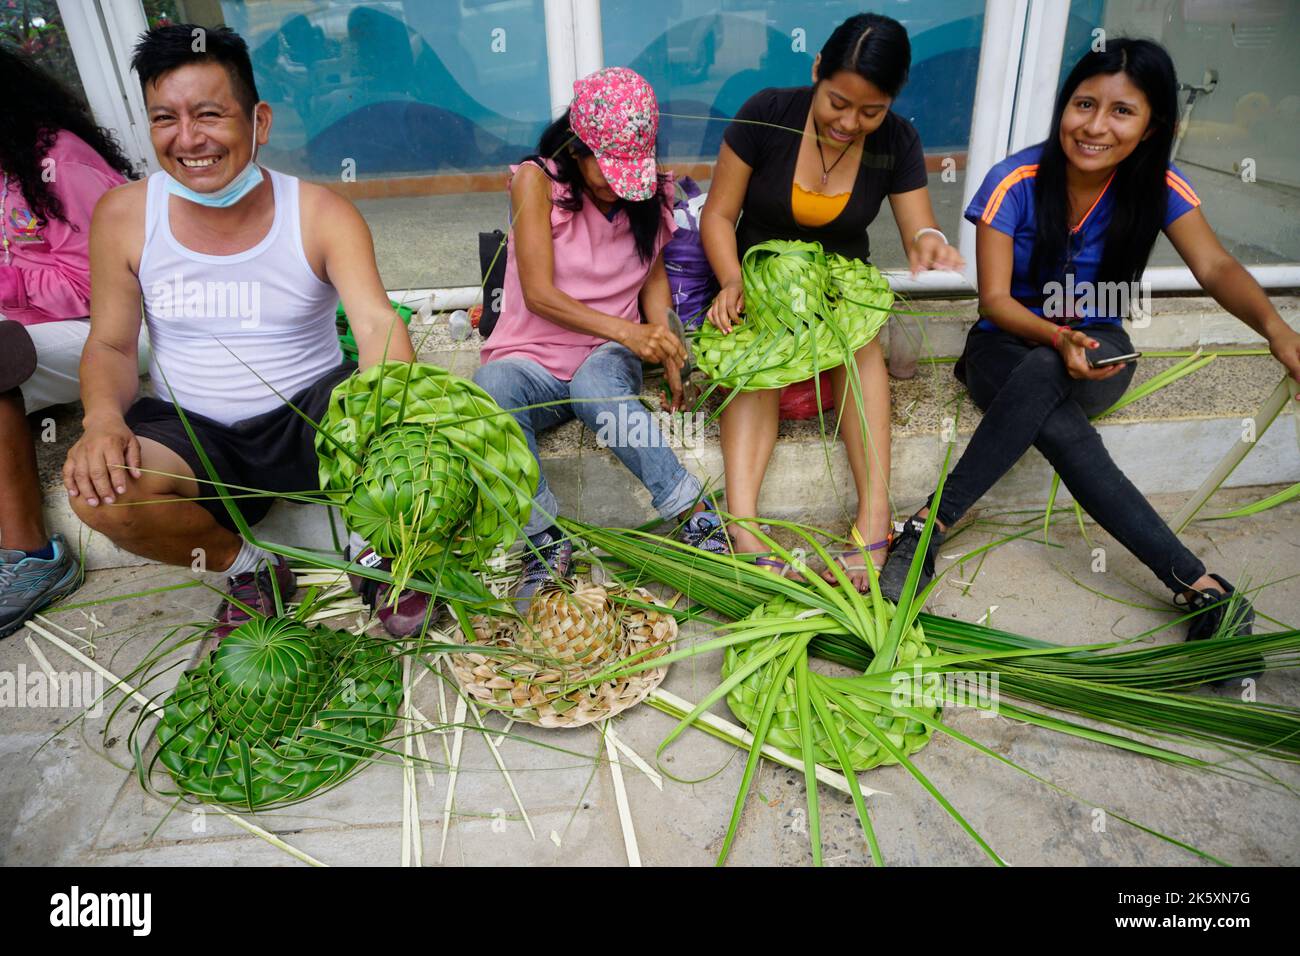 Membres de la famille qui font des chapeaux de feuilles de palmier à noix de coco, Acapulco, Mexique Banque D'Images